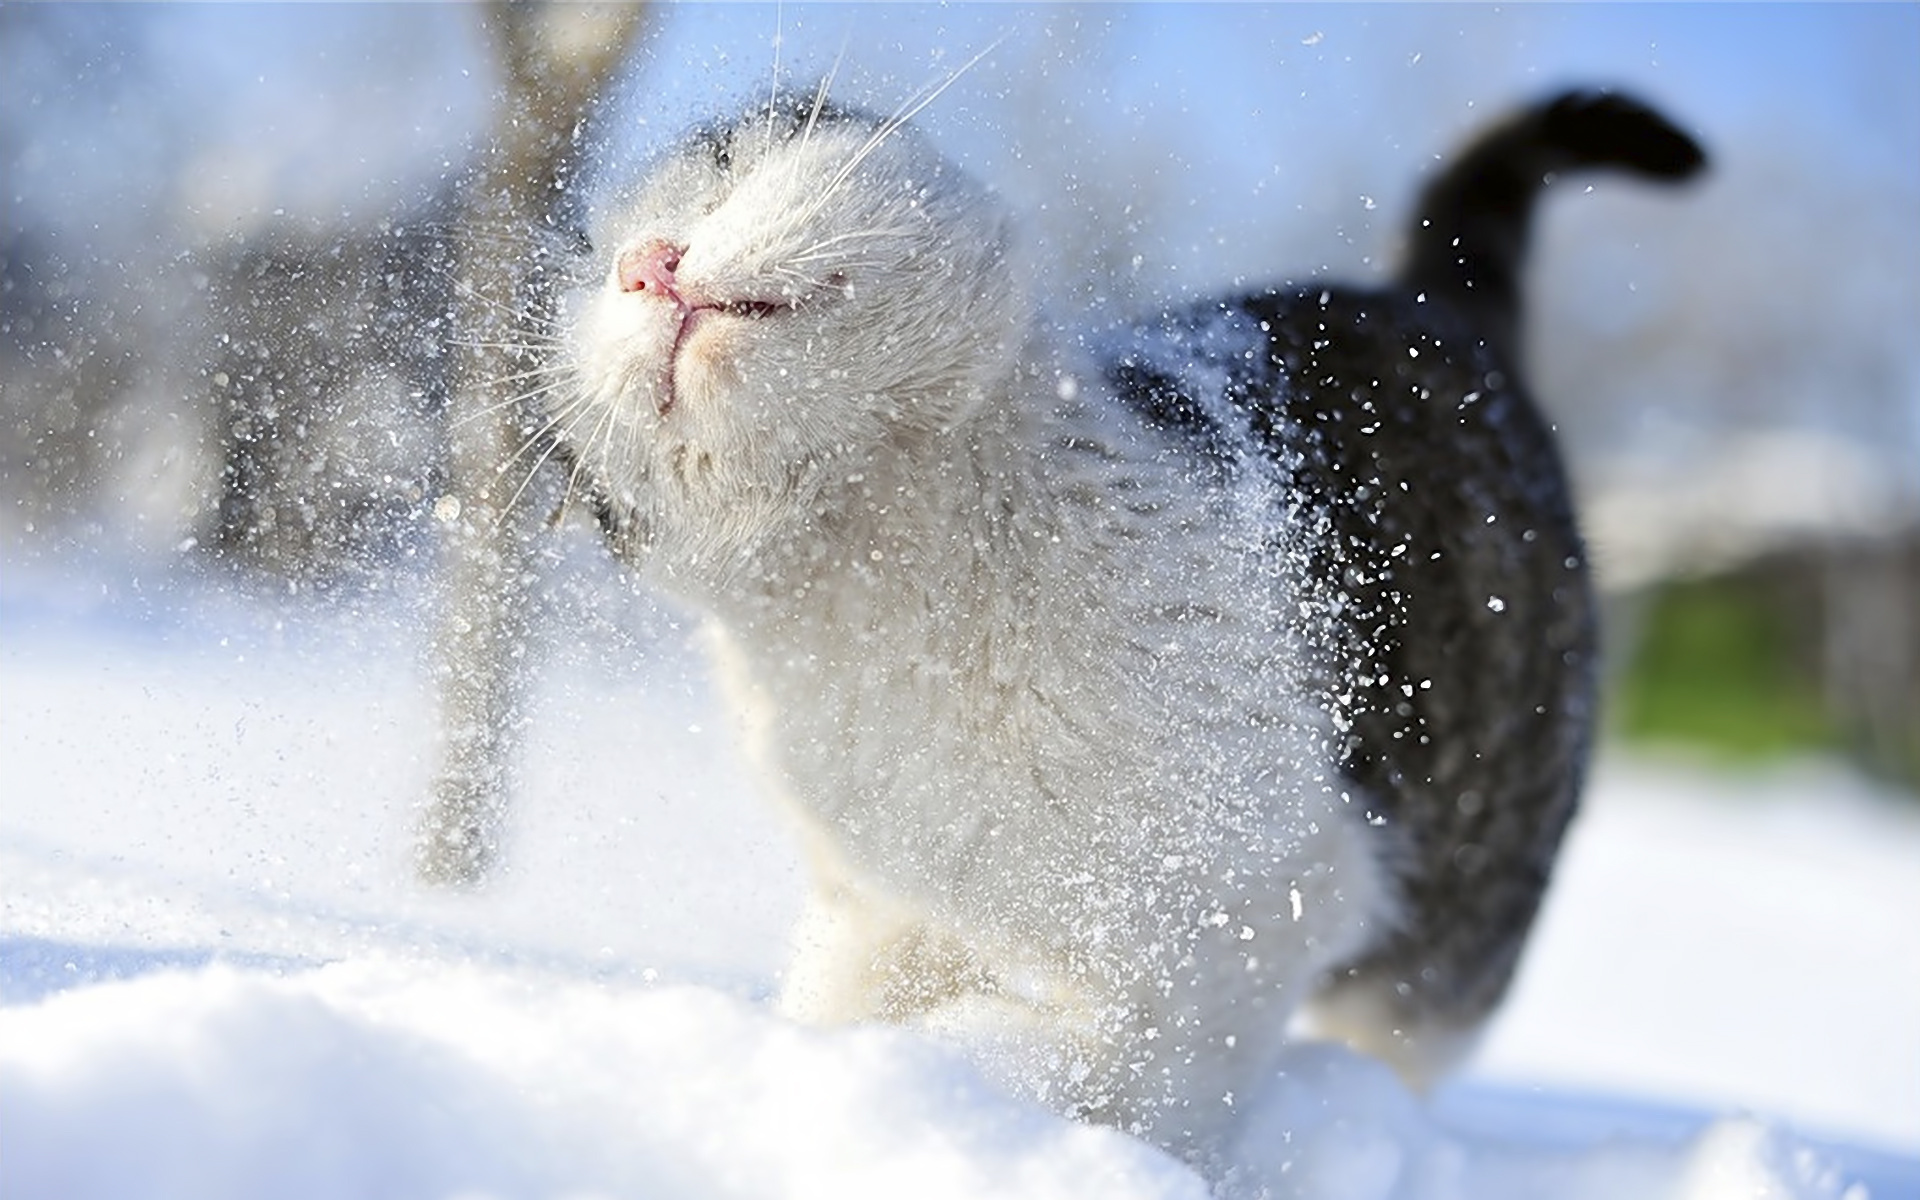 Cat In Snow Desktop Wallpapers